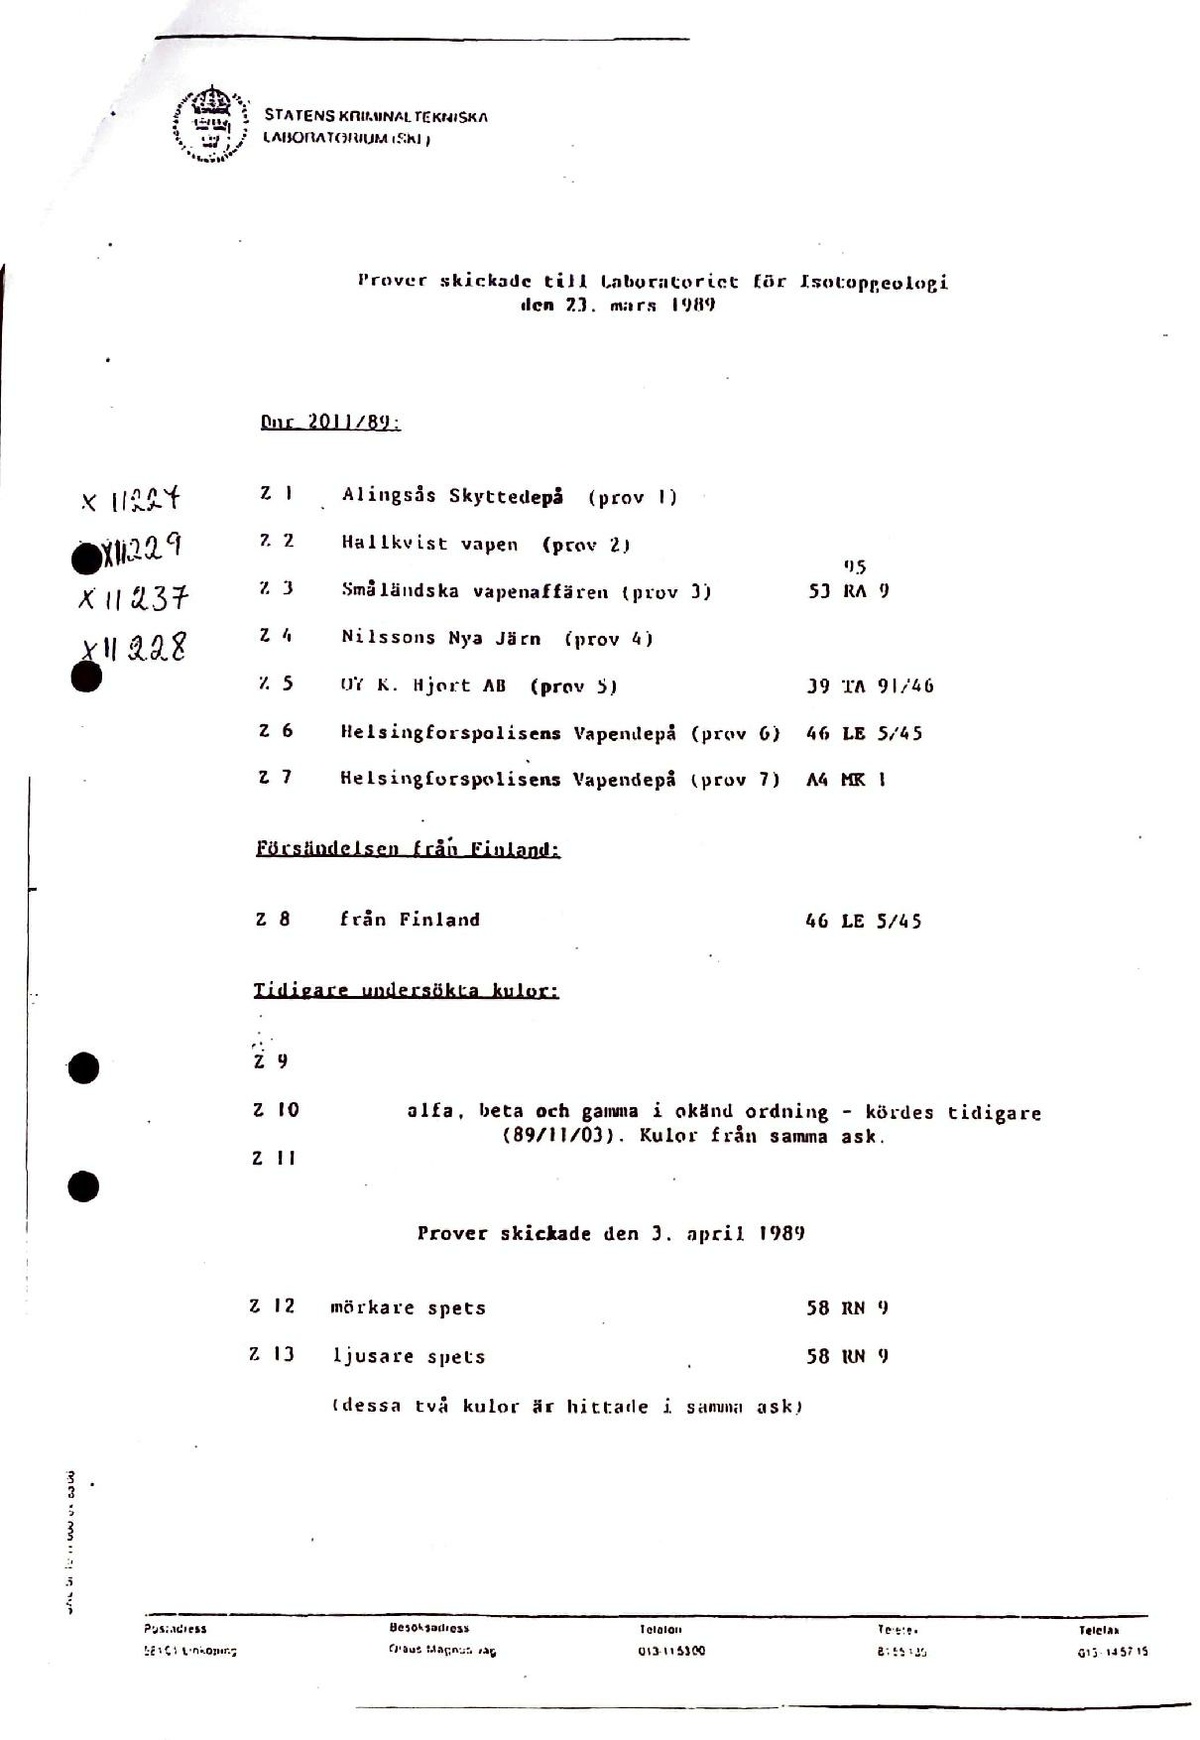 Pol-1989-05-22 XA13100-04 Blyisotopundersökning spårning.pdf